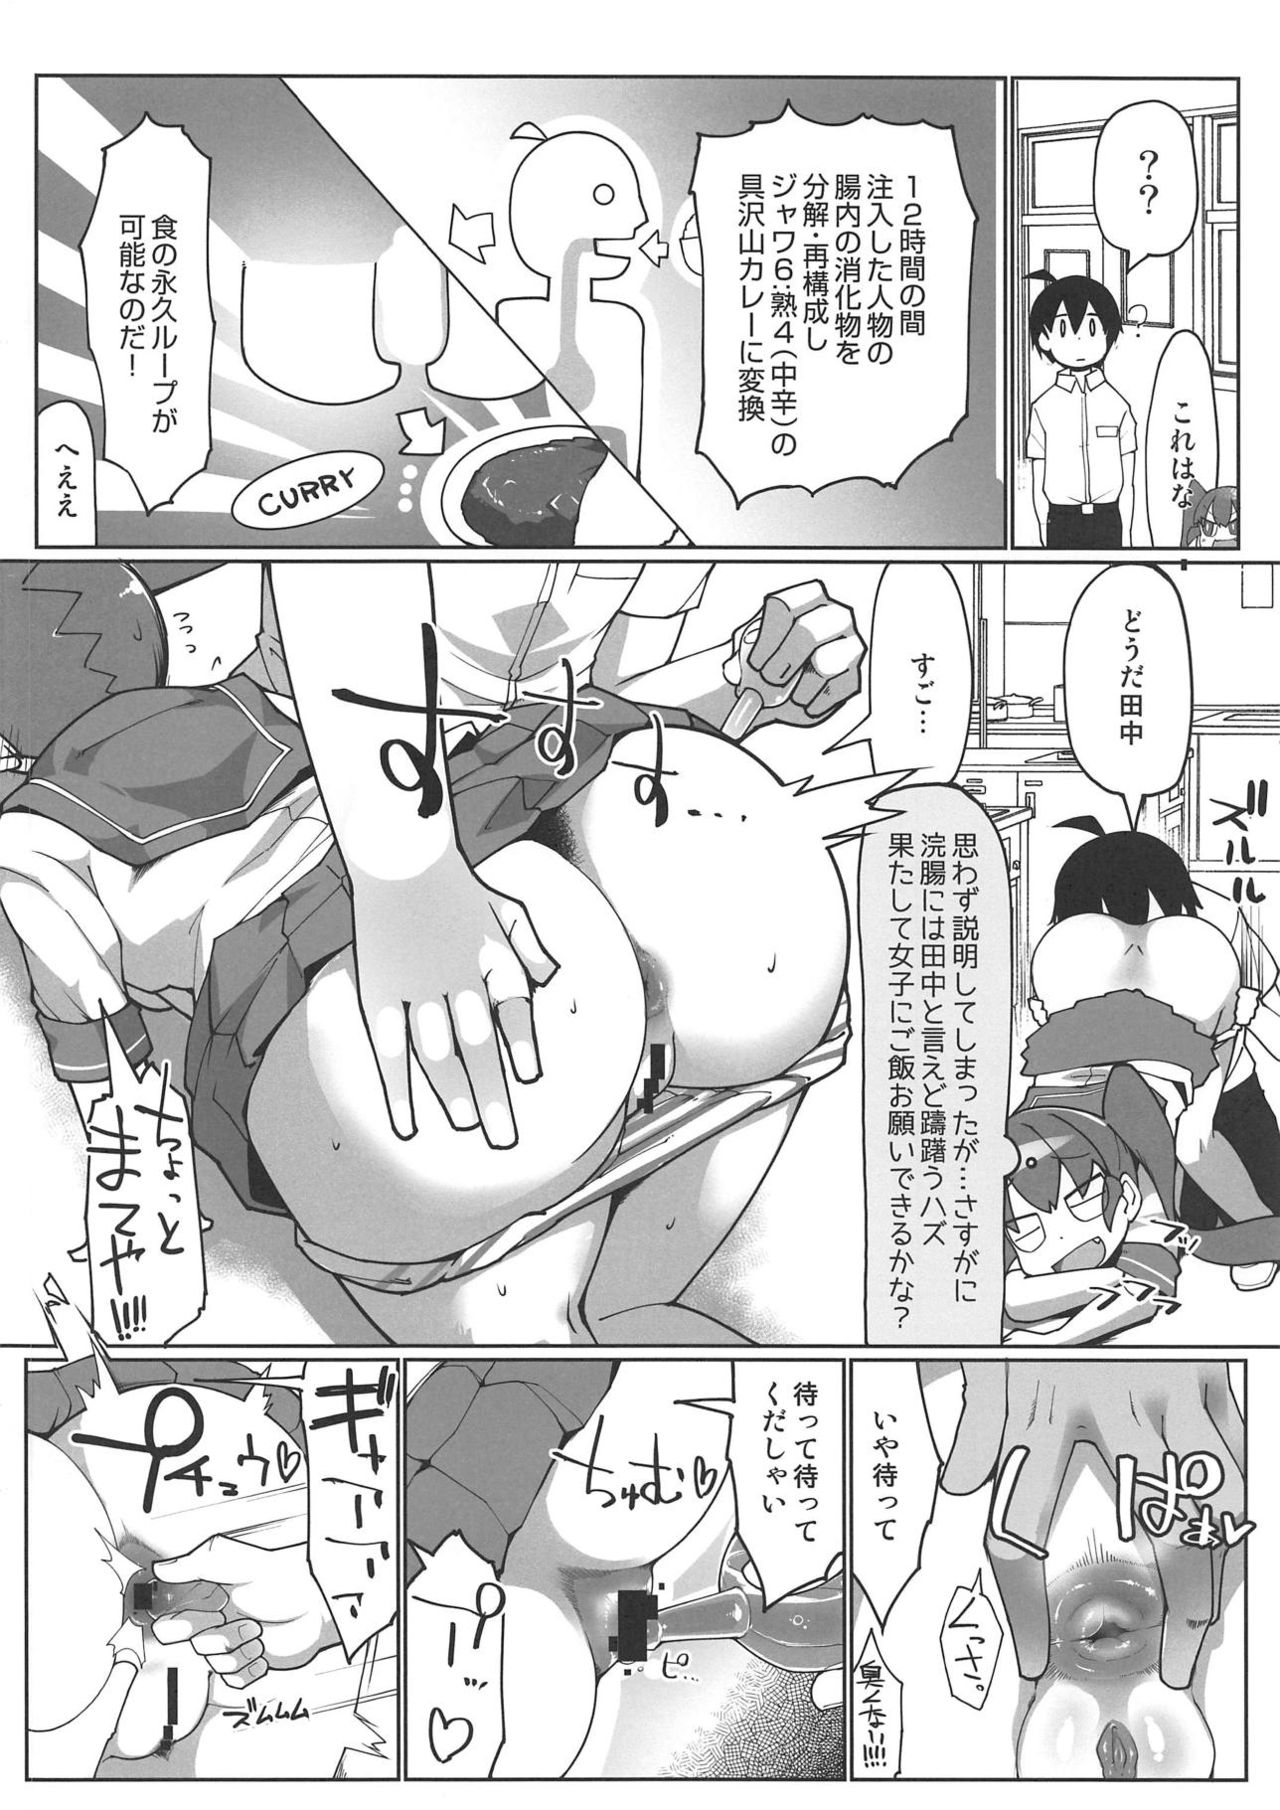 (COMIC1☆15) [あったまろ。 (こたつ。)] カレー味のカレー (上野さんは不器用)